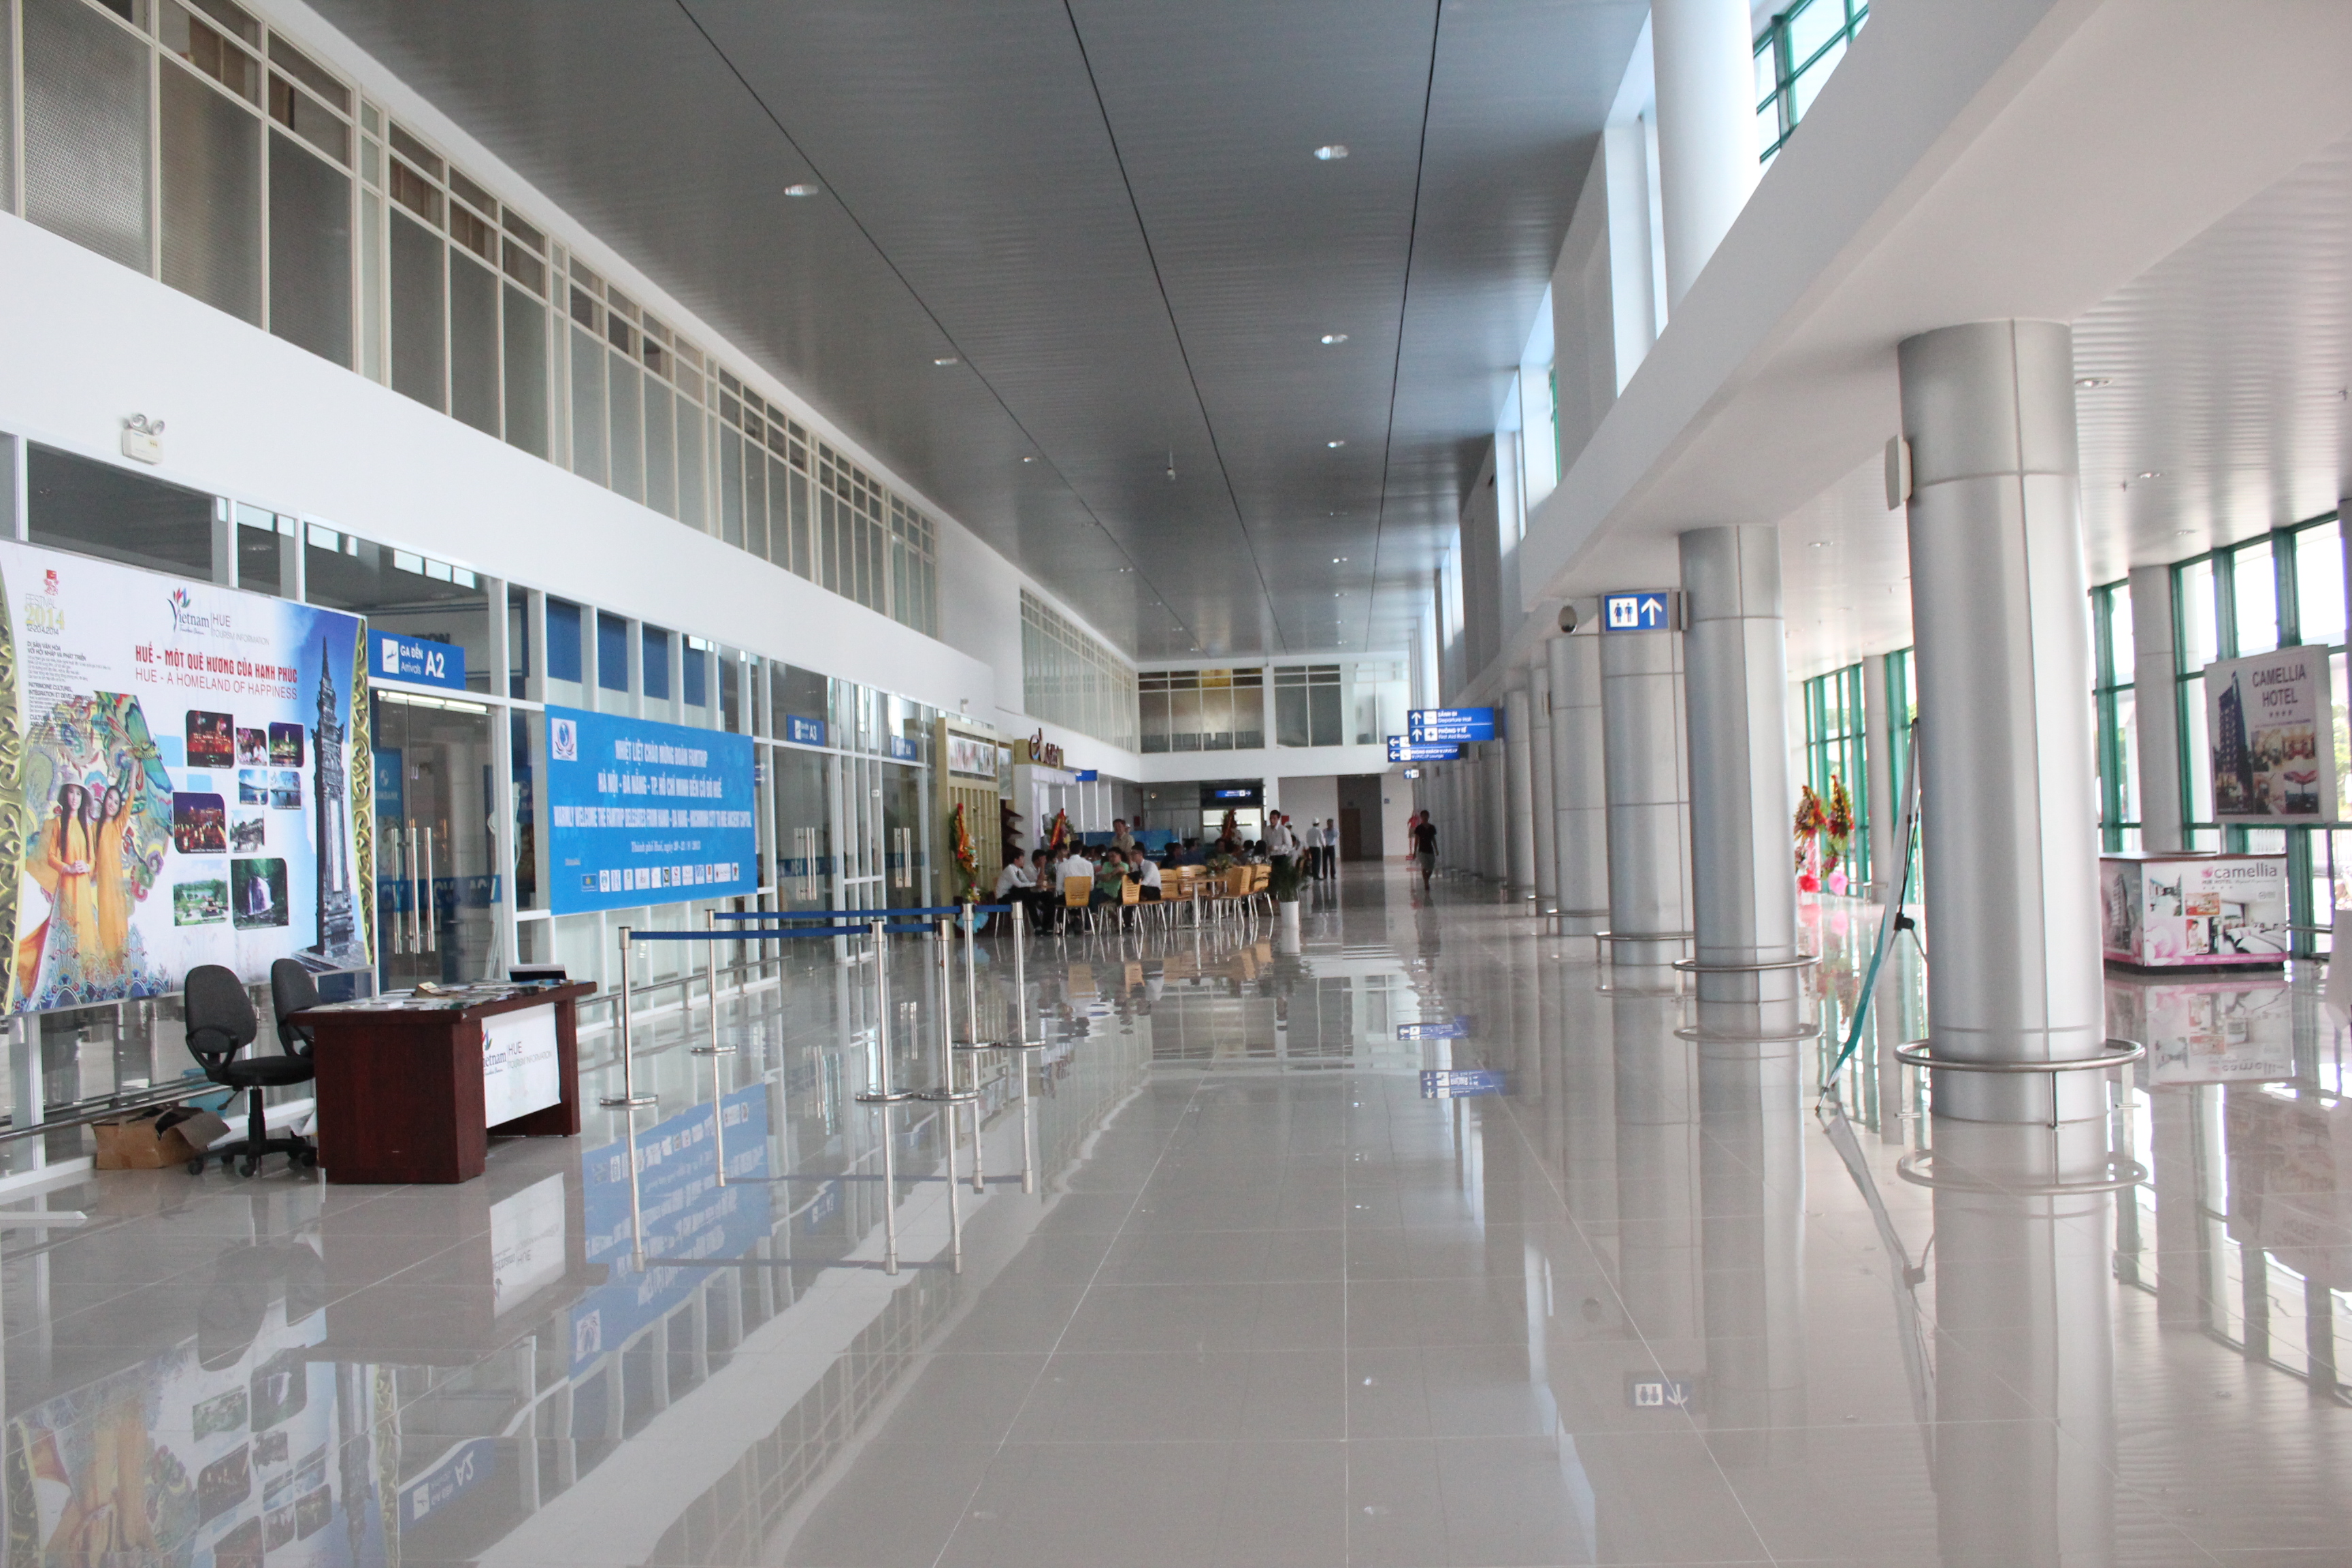 Sân bay Phú Bài - Huế 1